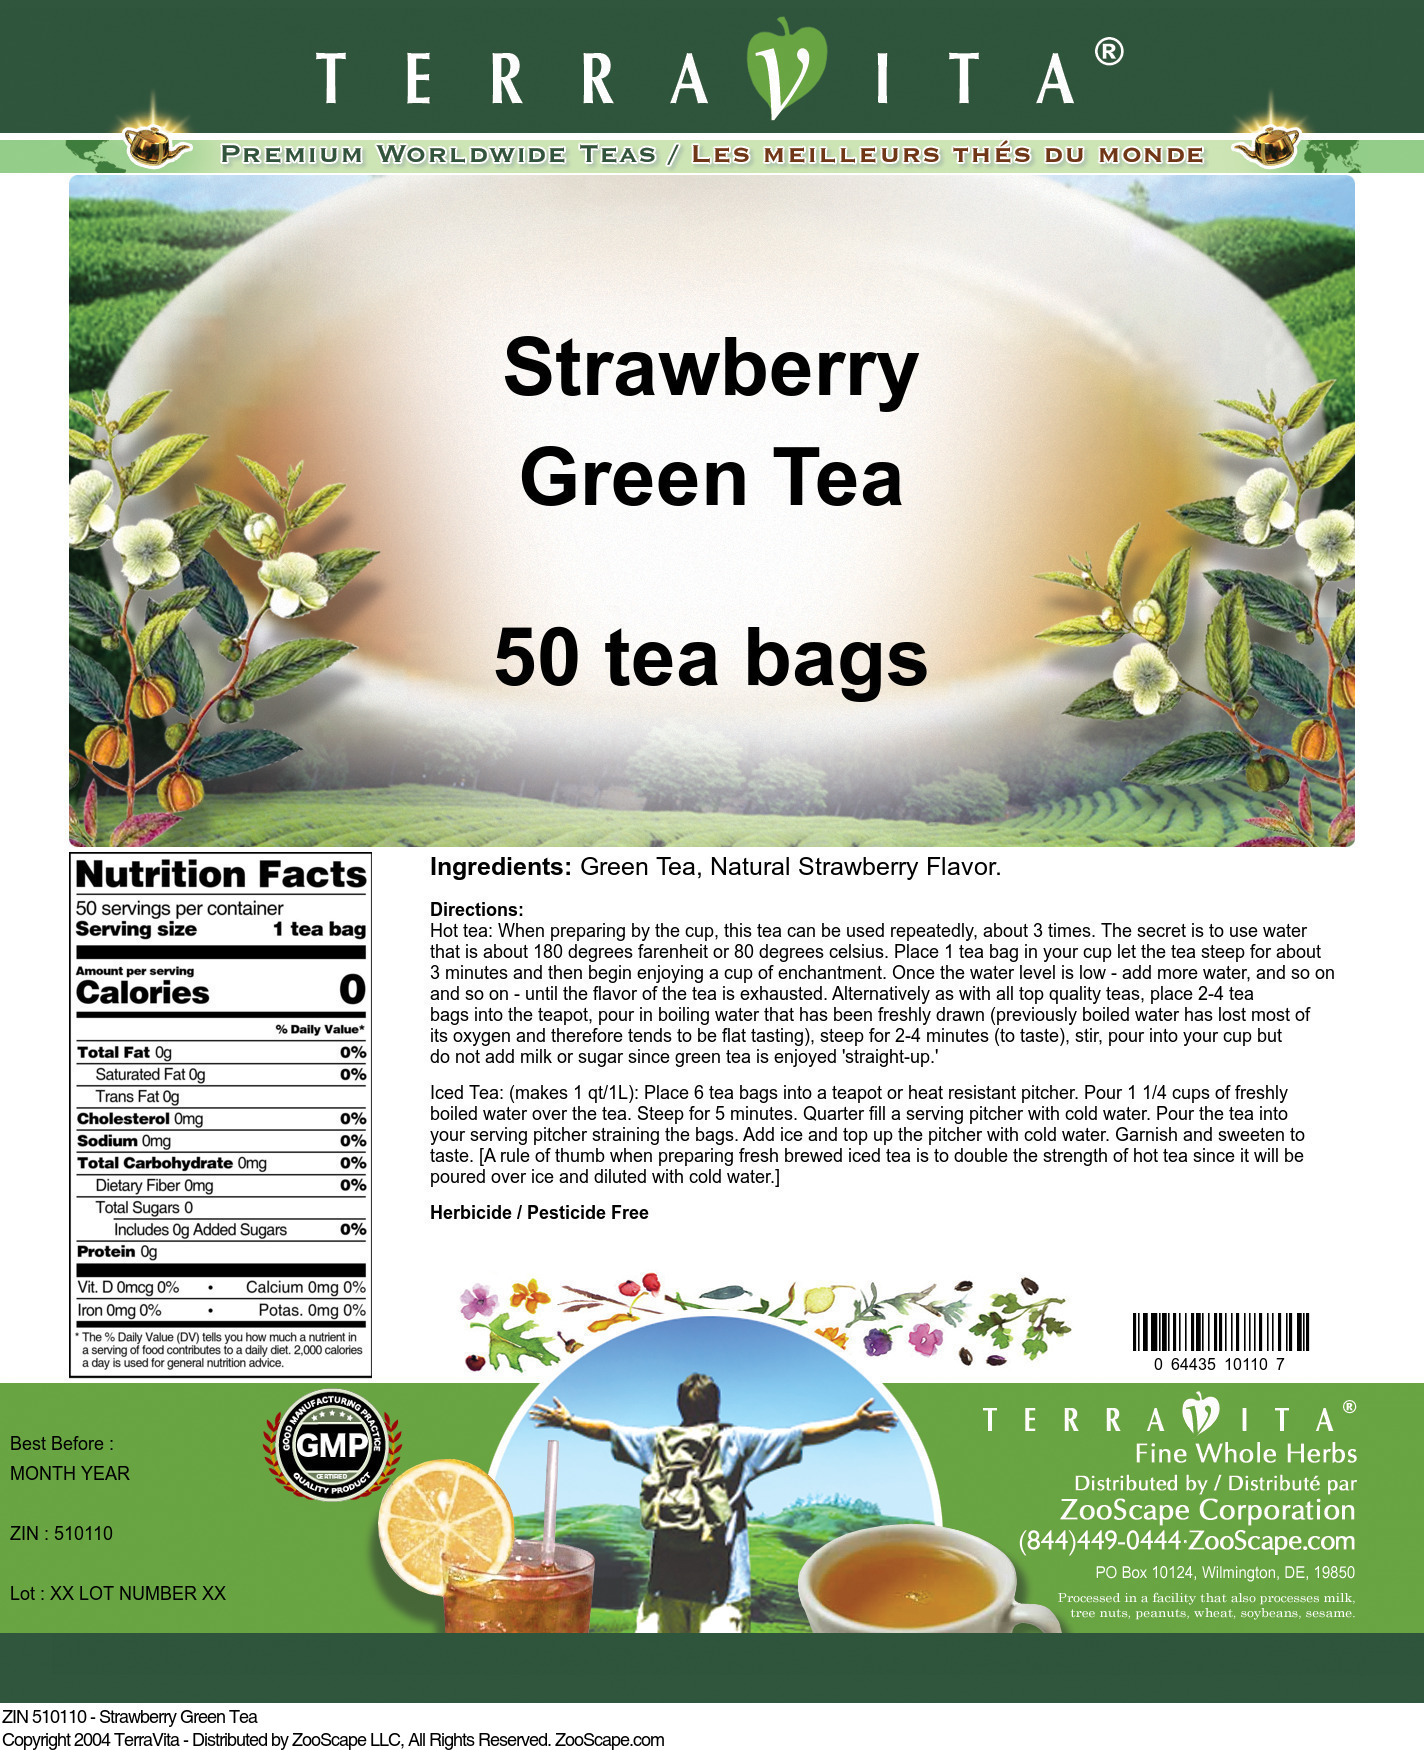 TerraVita Strawberry Green Tea (50 tea bags, ZIN: 510110)